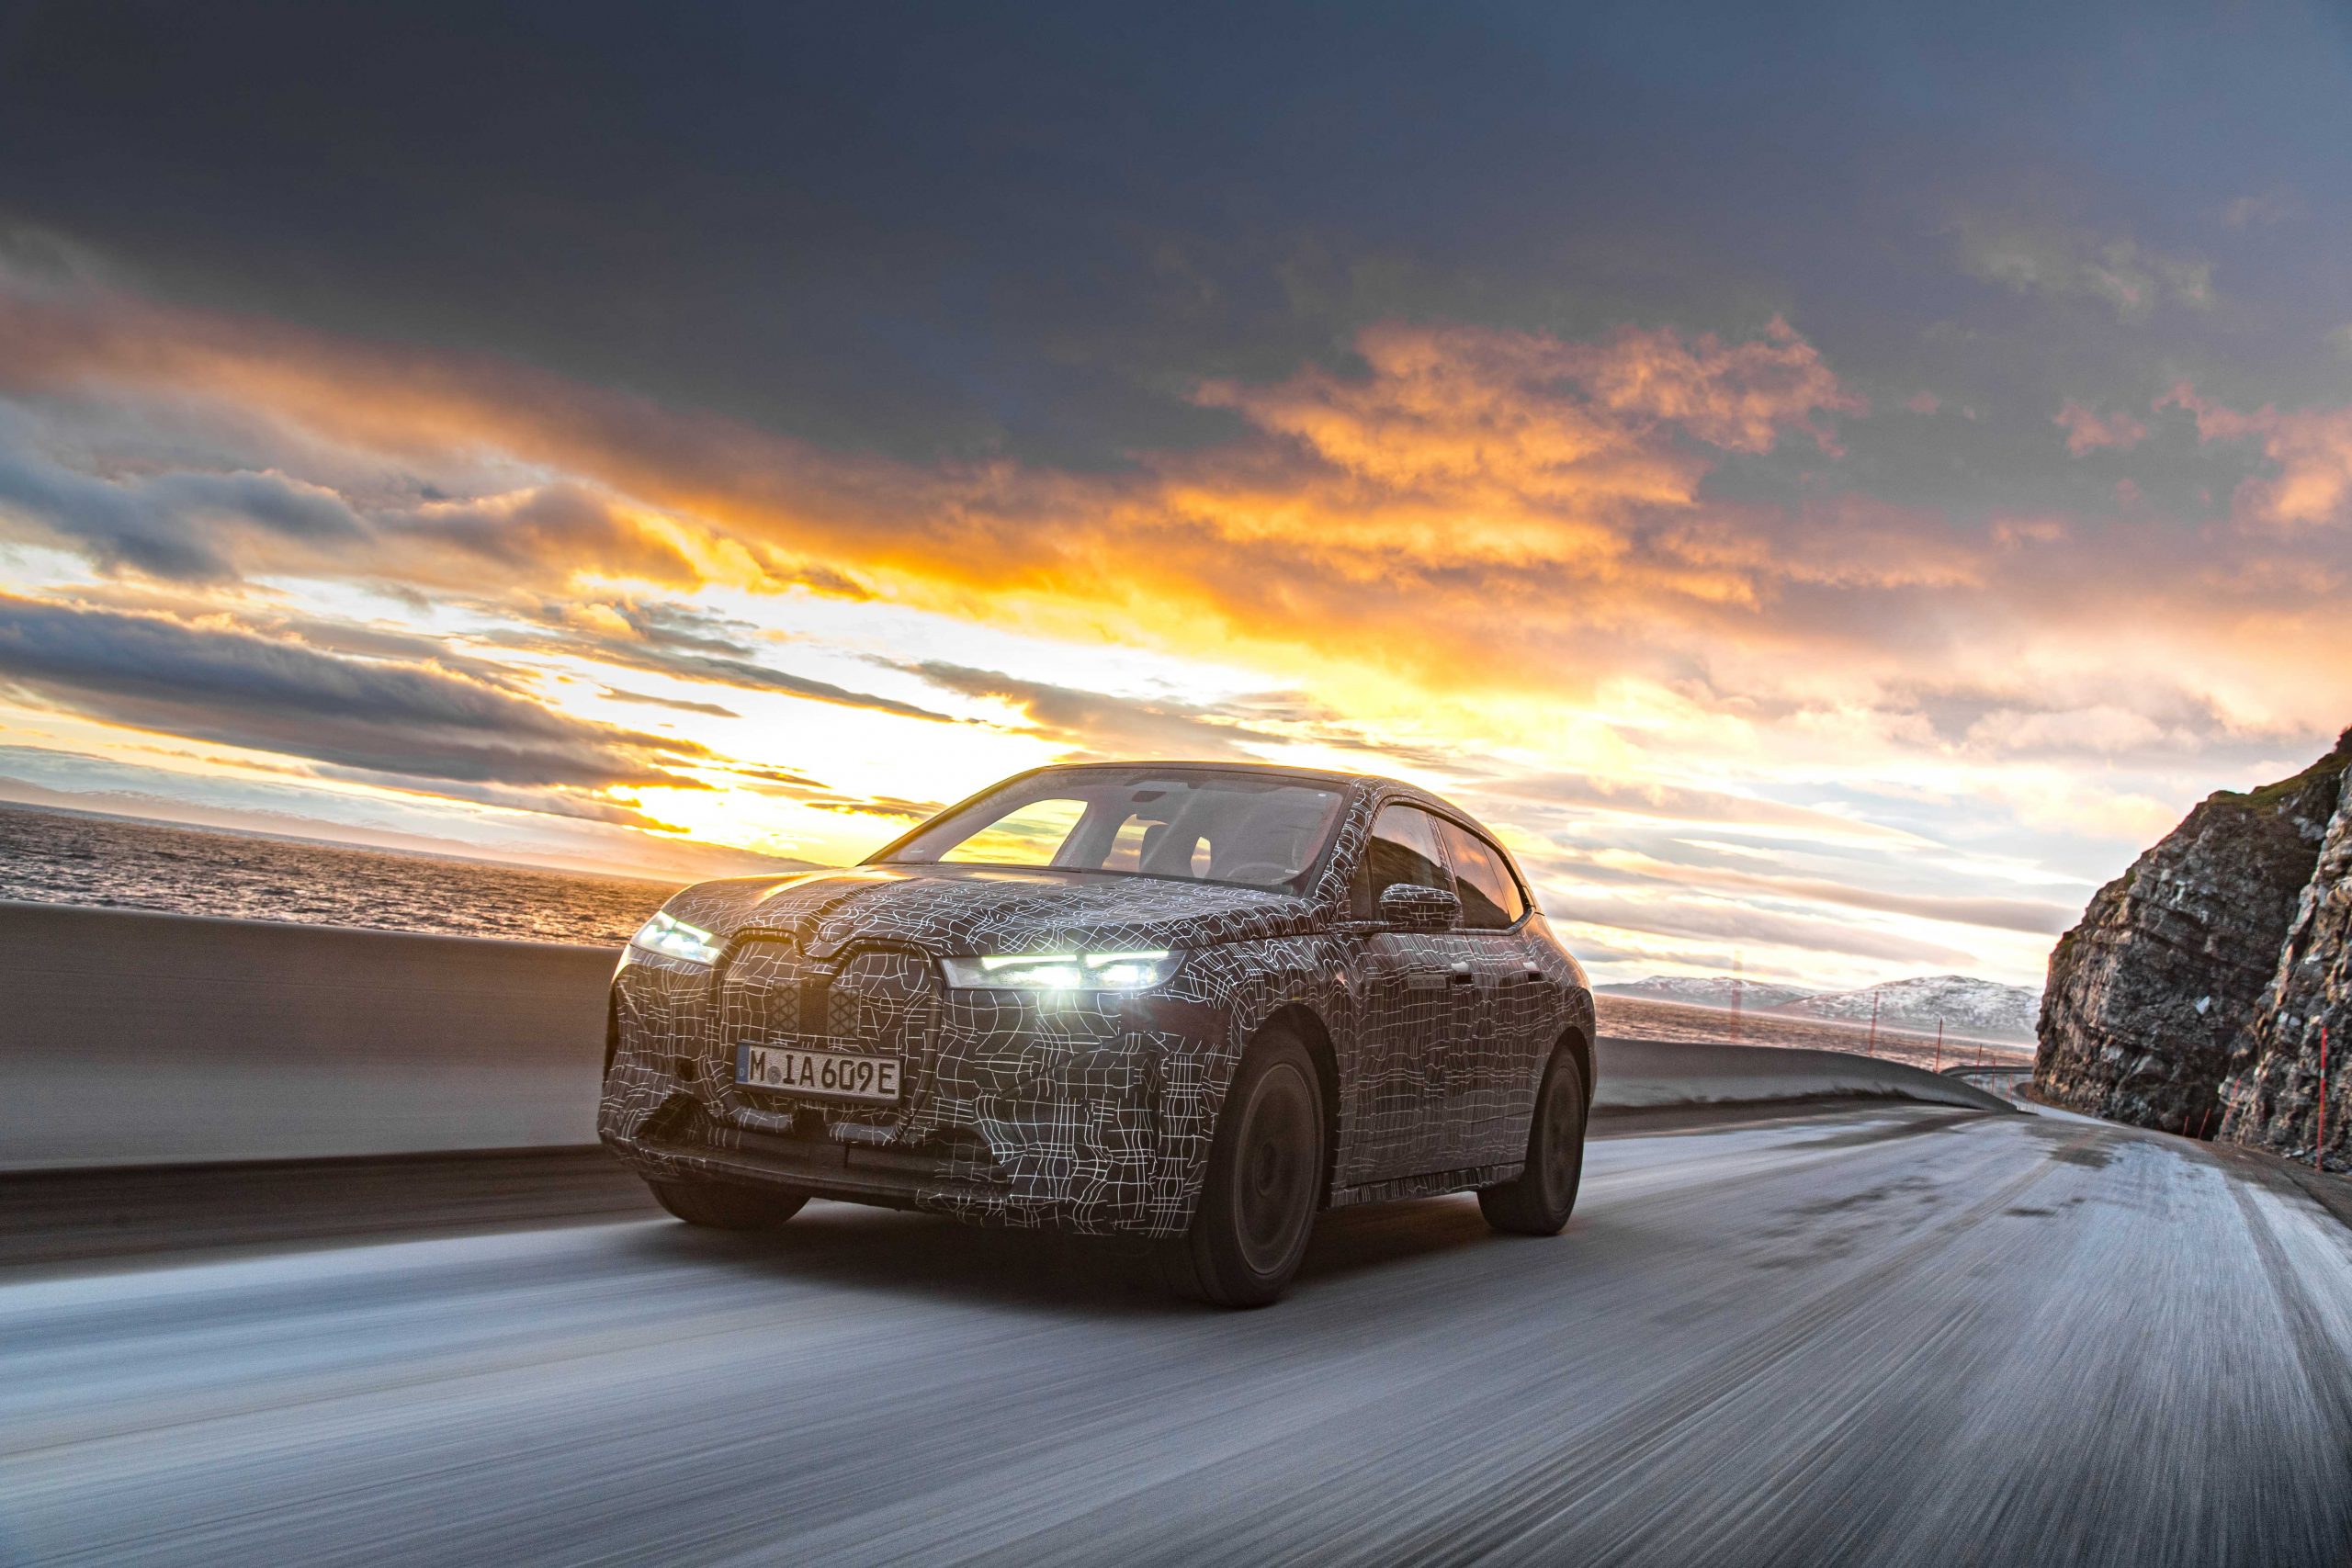 BMW iX En Zorlu Kış Şartlarında Test Ediliyor